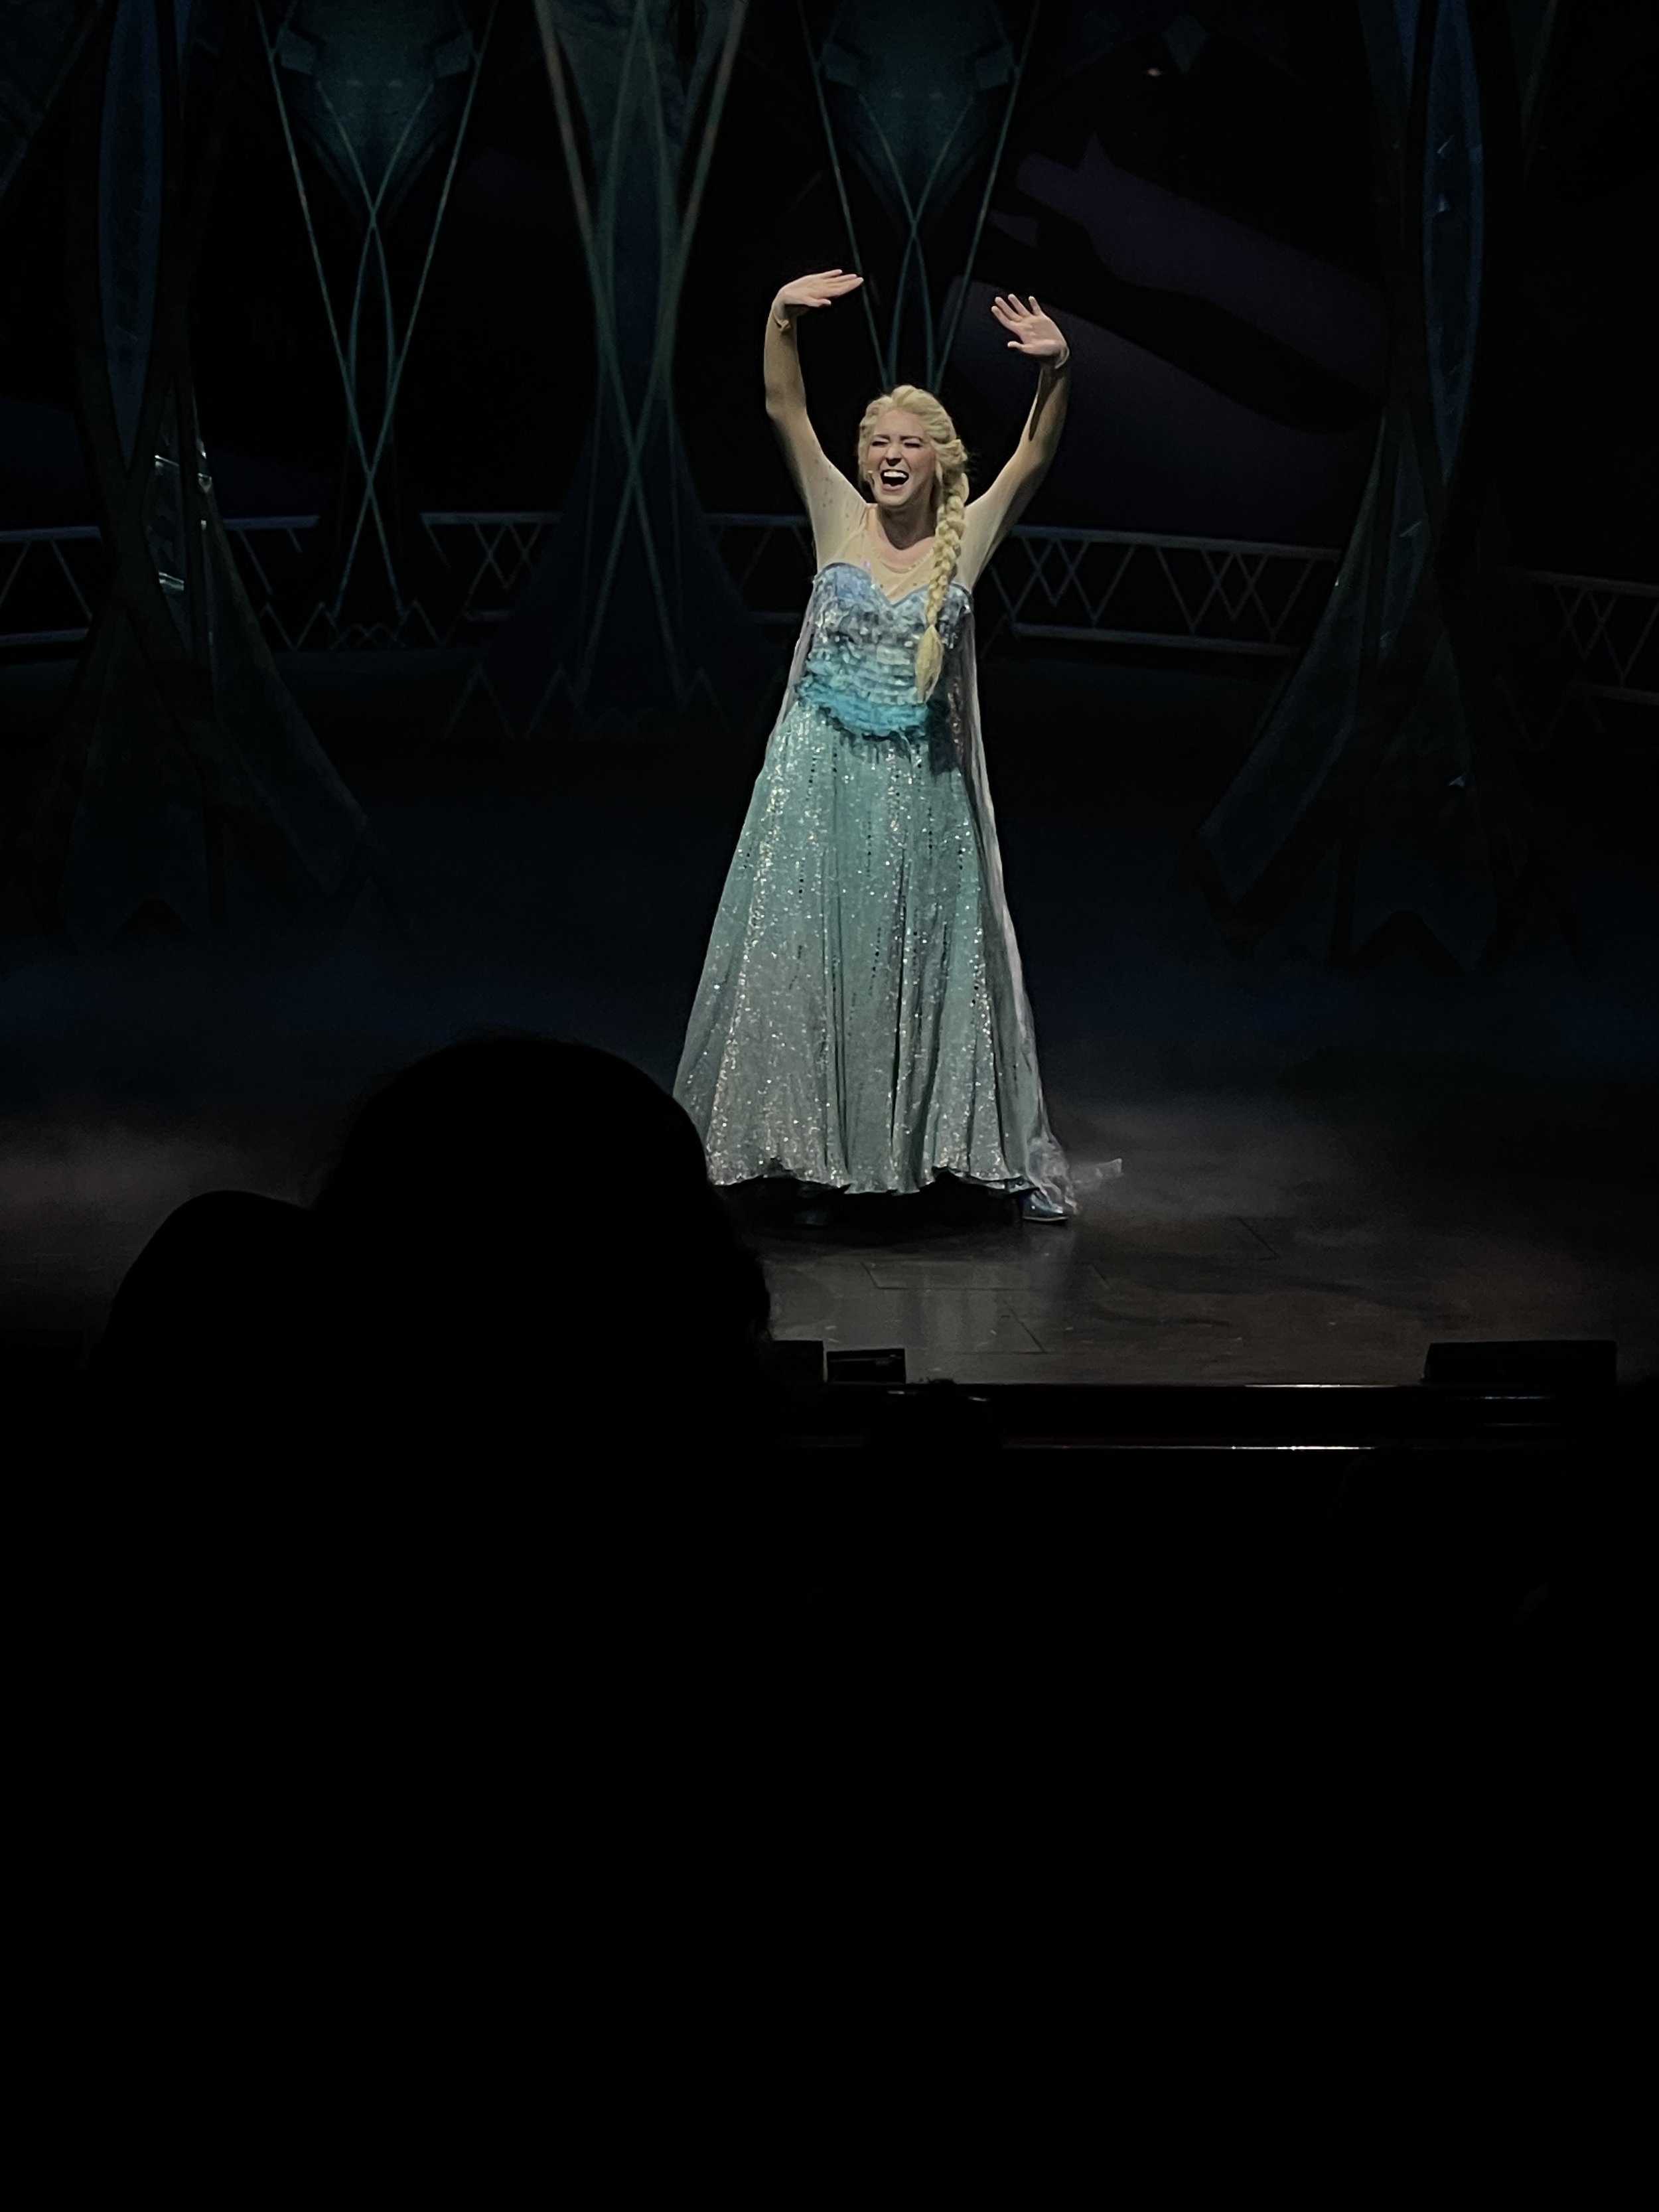  Chessa Metz sings “Let It Go” as Elsa in Frozen. 